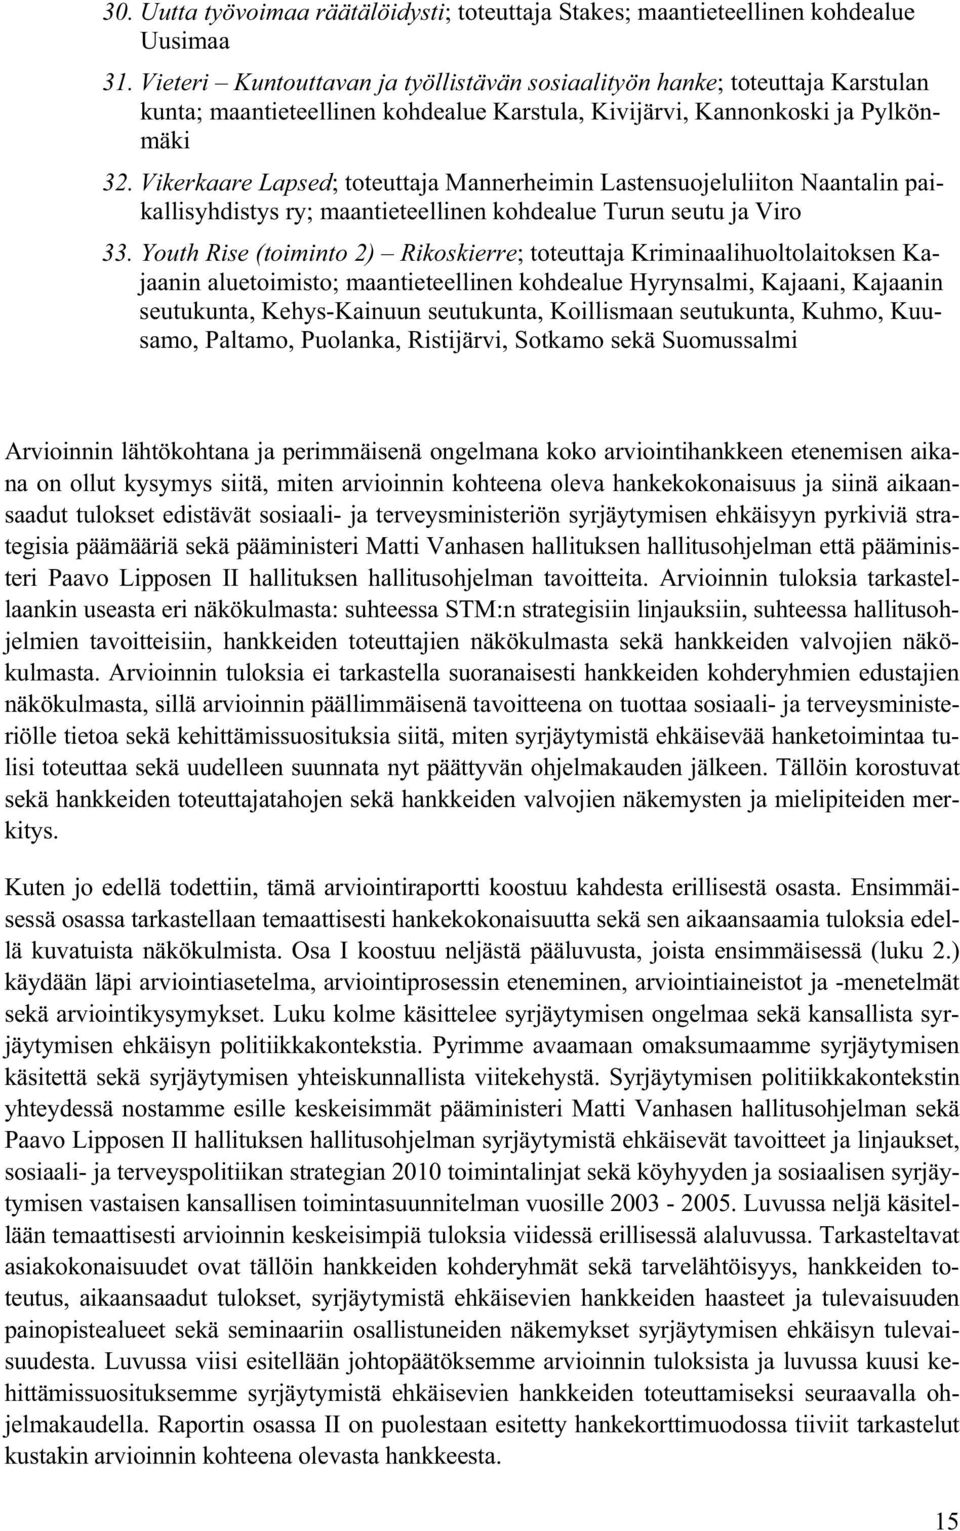 Vikerkaare Lapsed; toteuttaja Mannerheimin Lastensuojeluliiton Naantalin paikallisyhdistys ry; maantieteellinen kohdealue Turun seutu ja Viro 33.